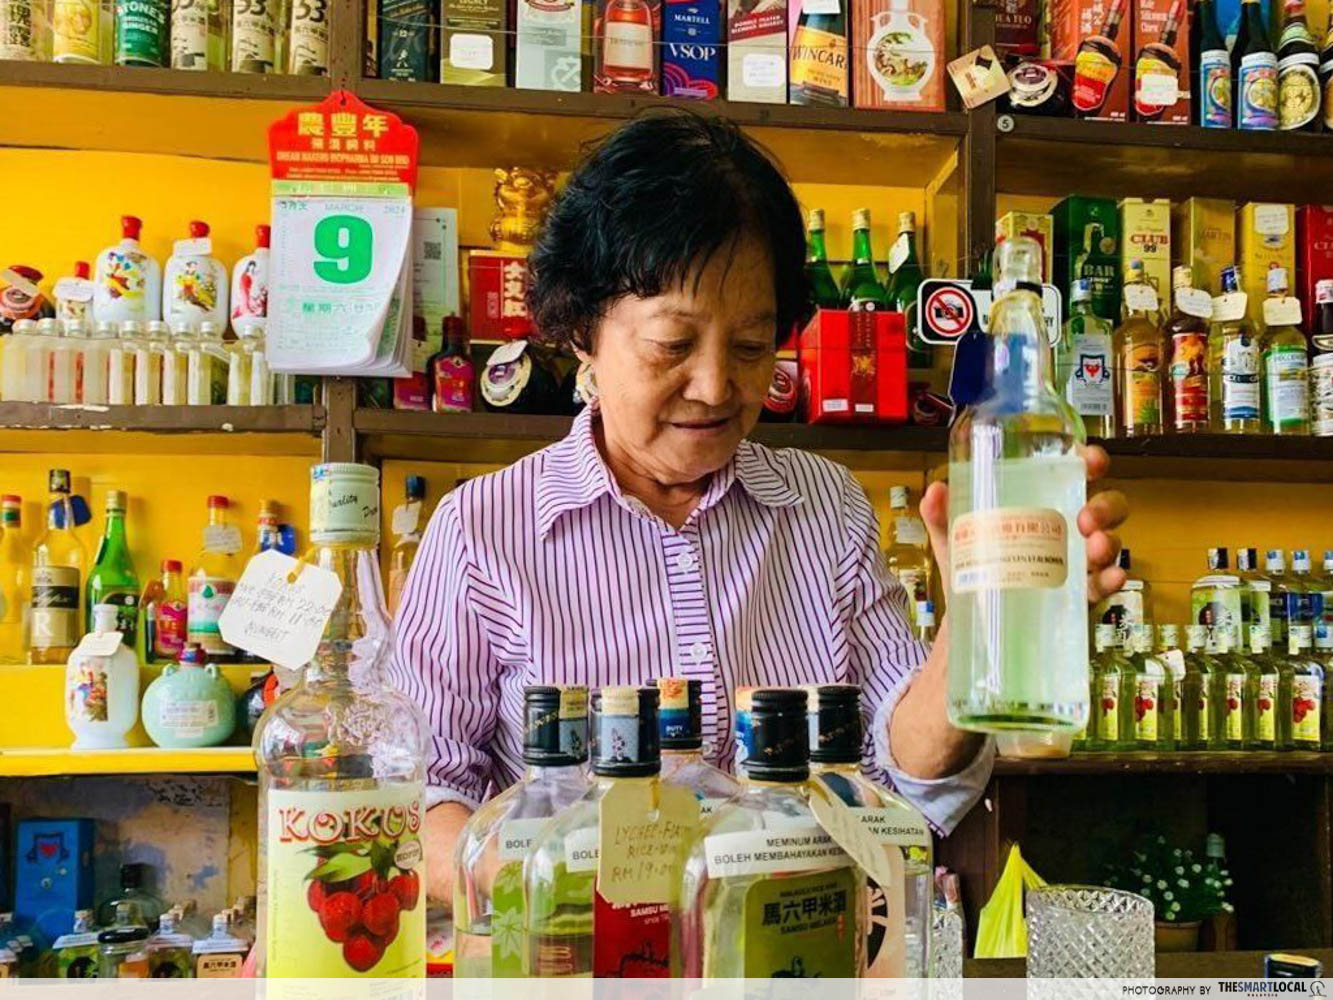 Nainai preparing drinks - Sin Hiap Hin in Melaka